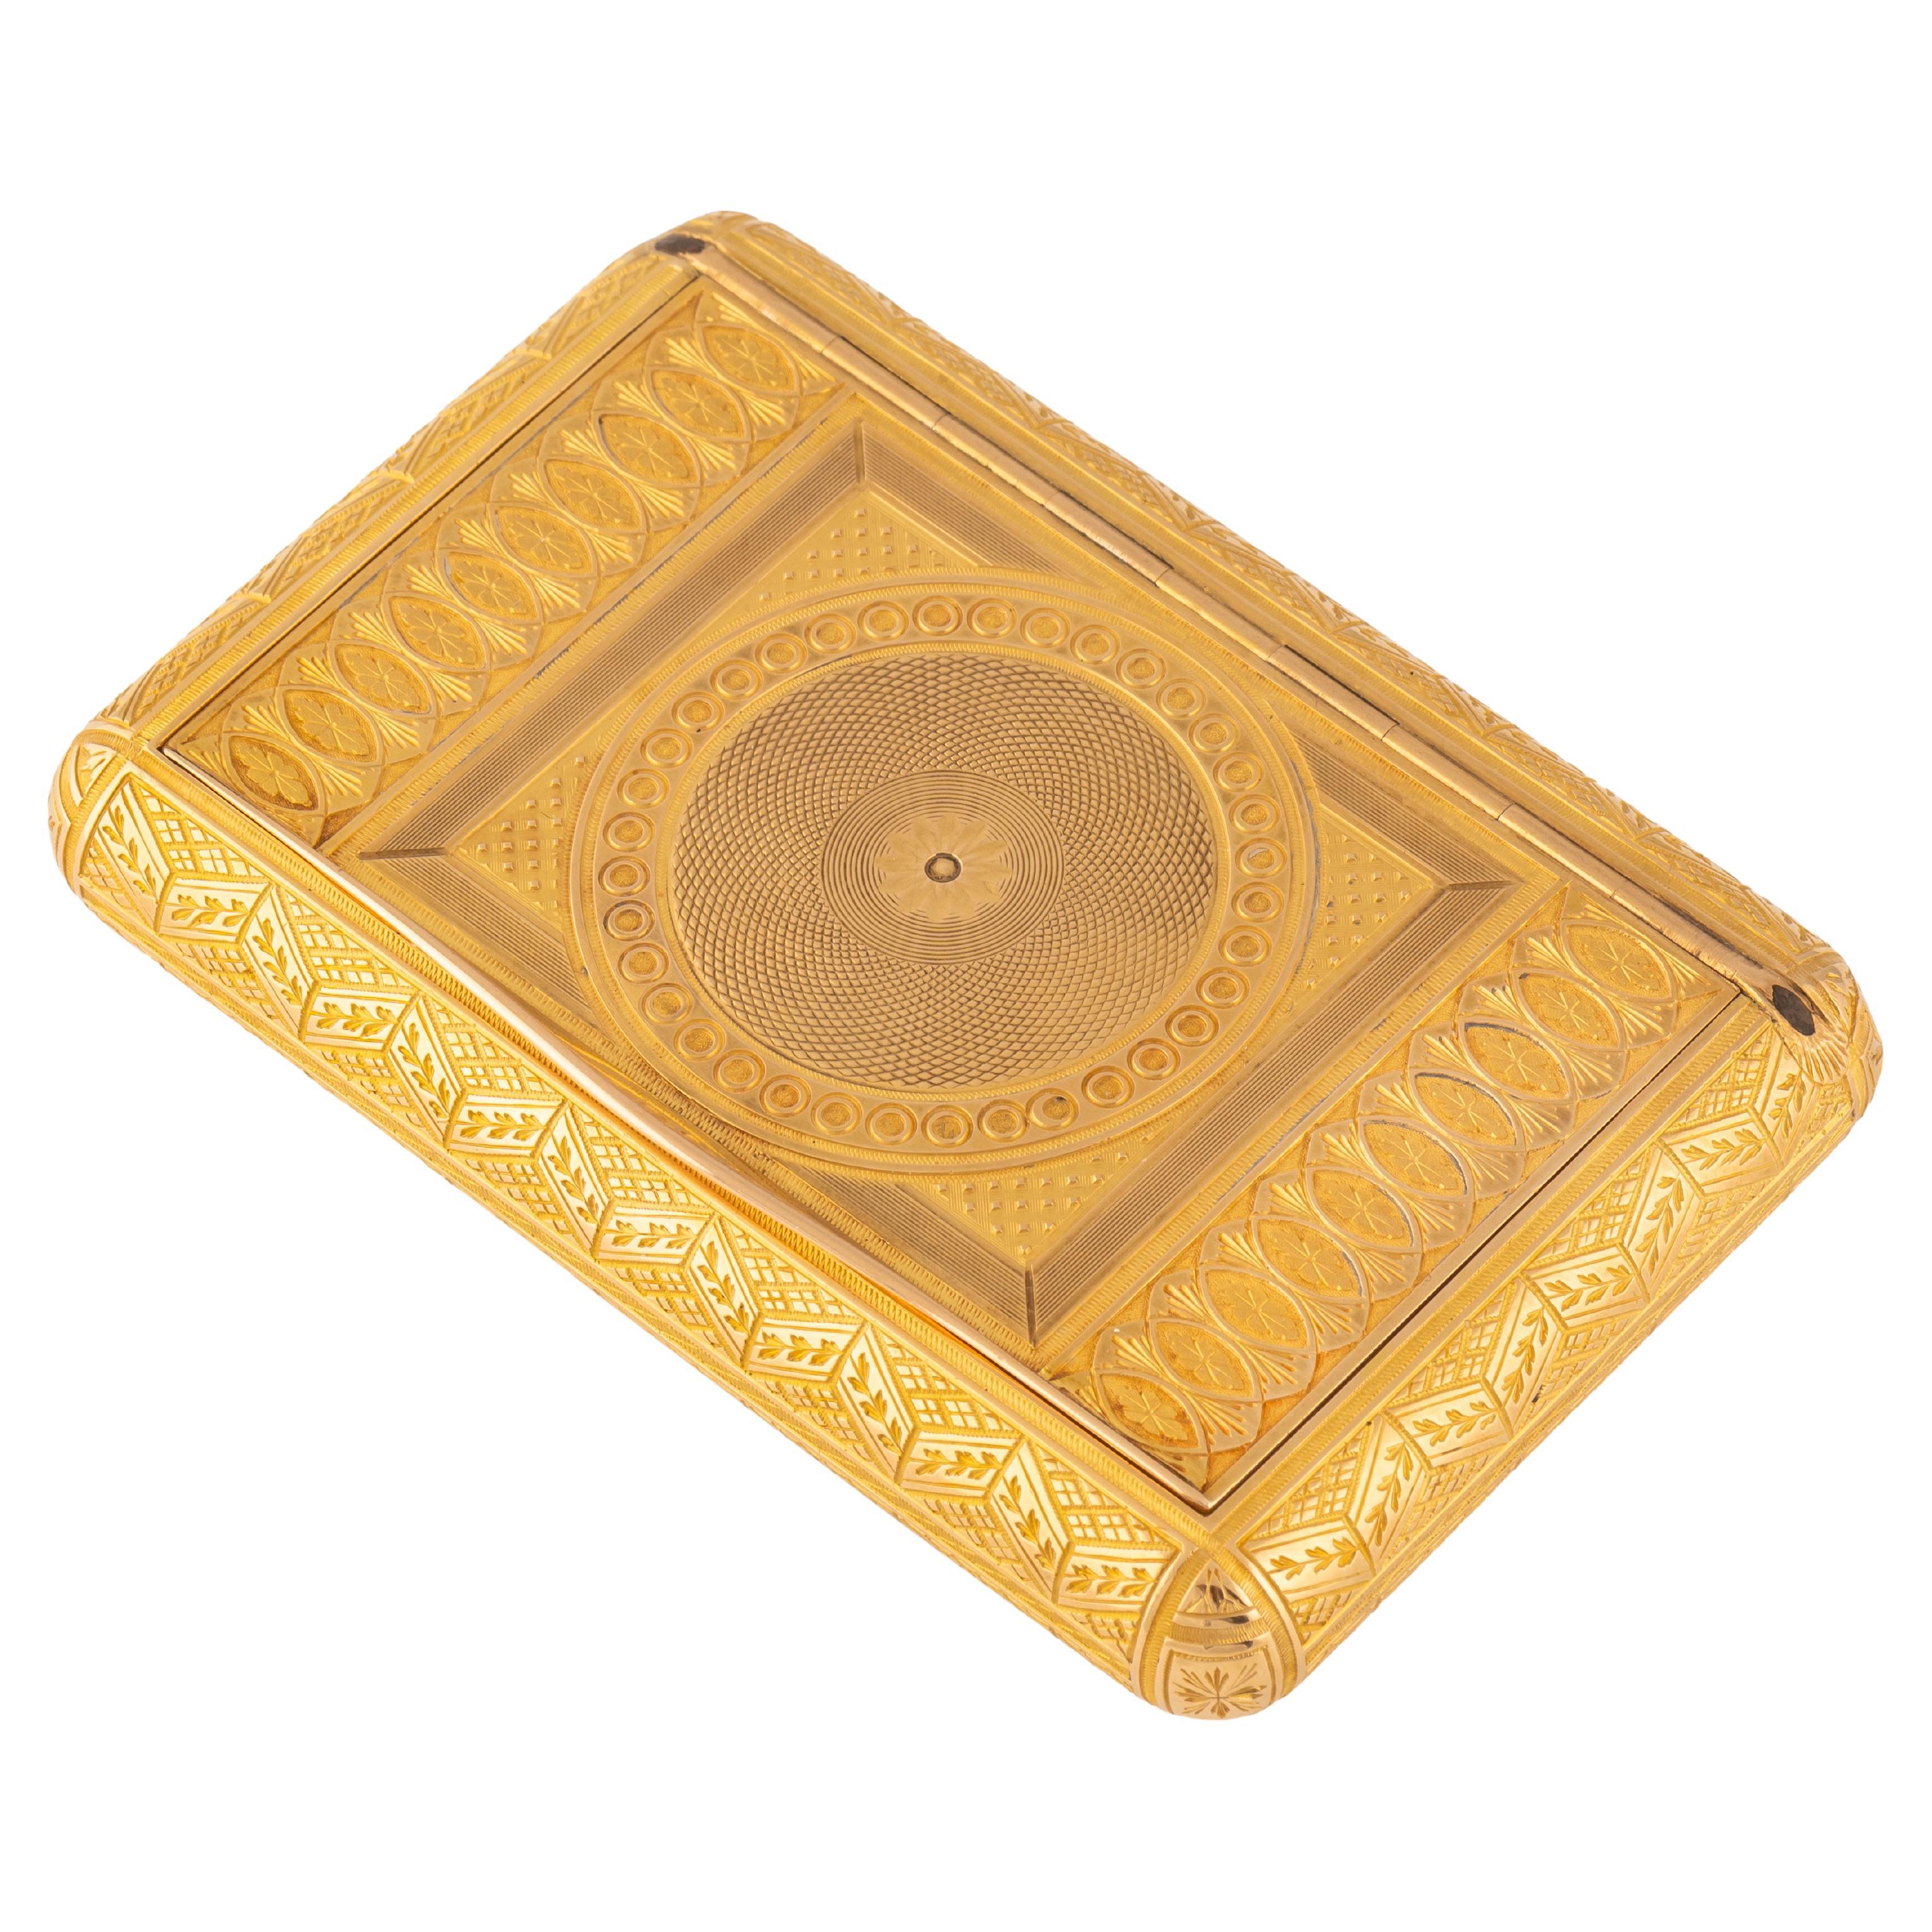 Russische Gold-Schnupftabakdose aus der Kaiserzeit von Keibel, St. Petersburg, um 1820